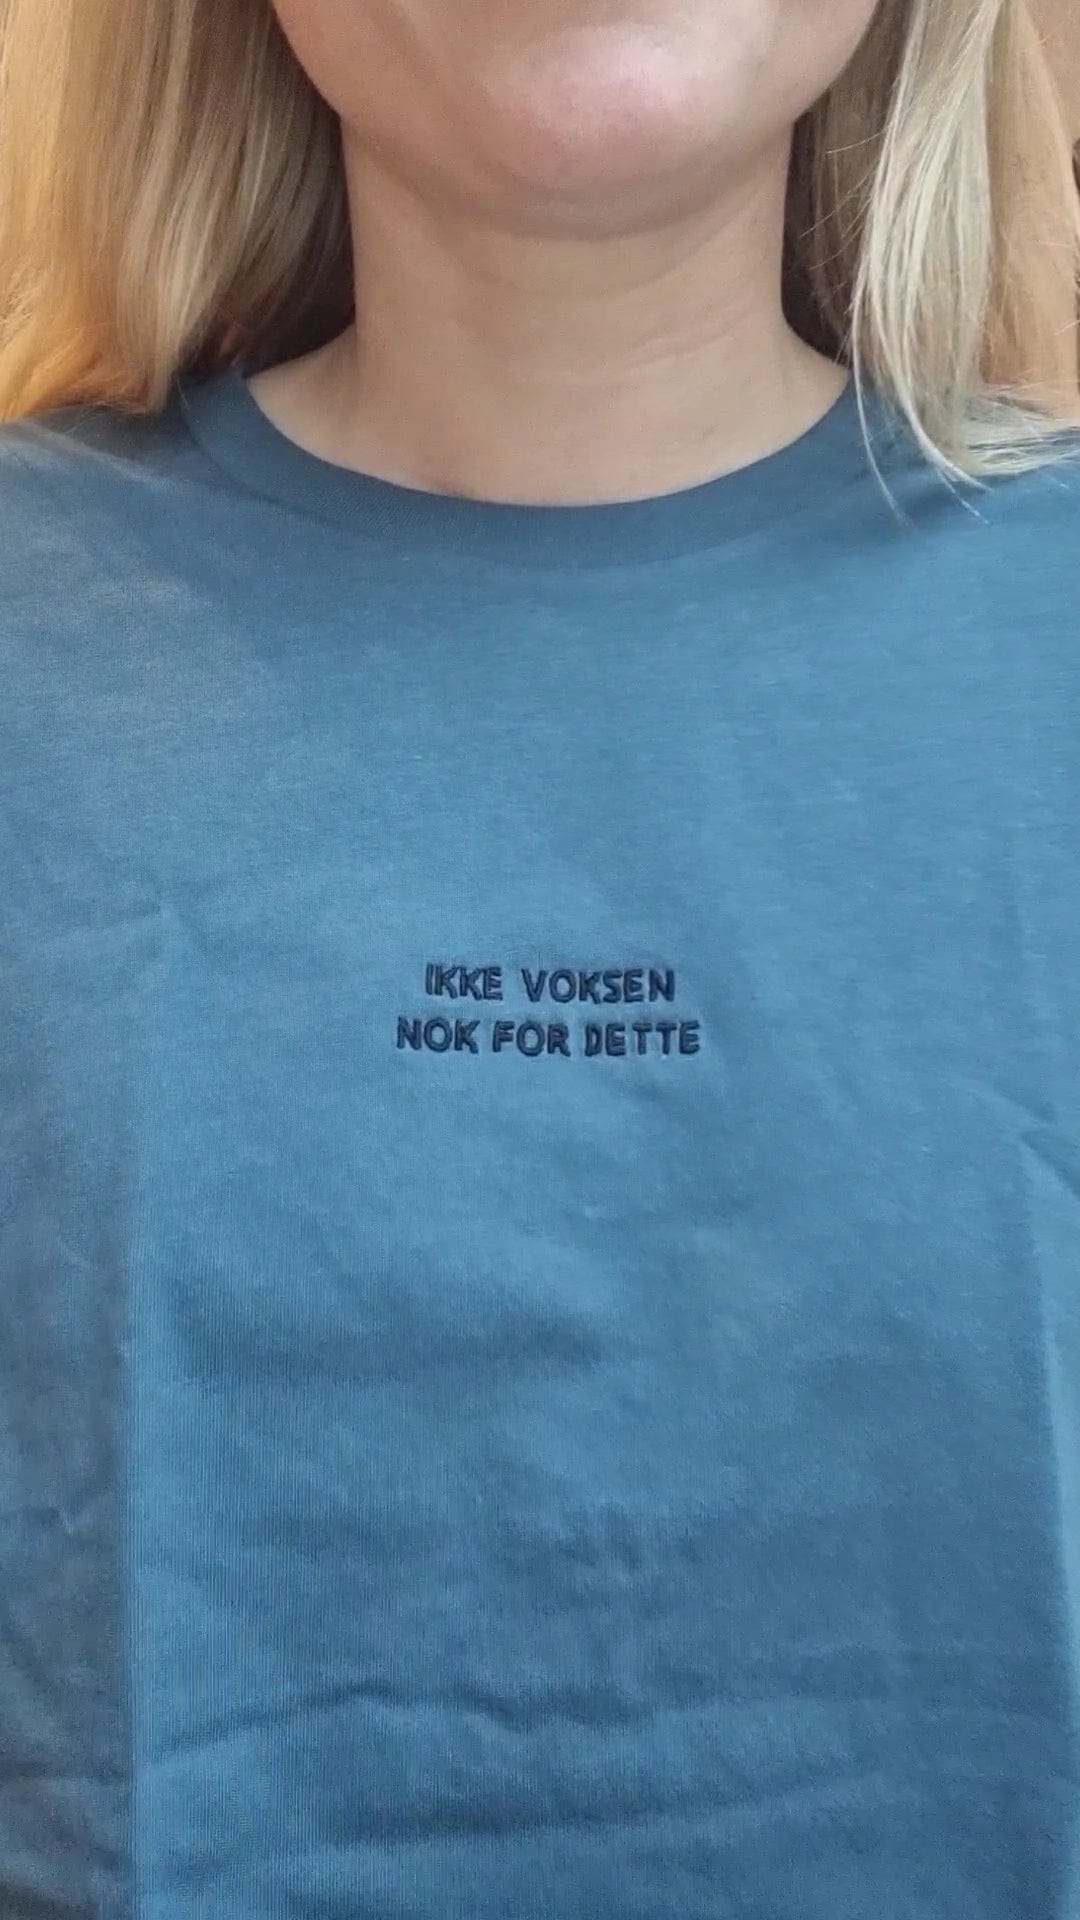 VAGPWR Ikke voksen - Unisex Eco t-shirt